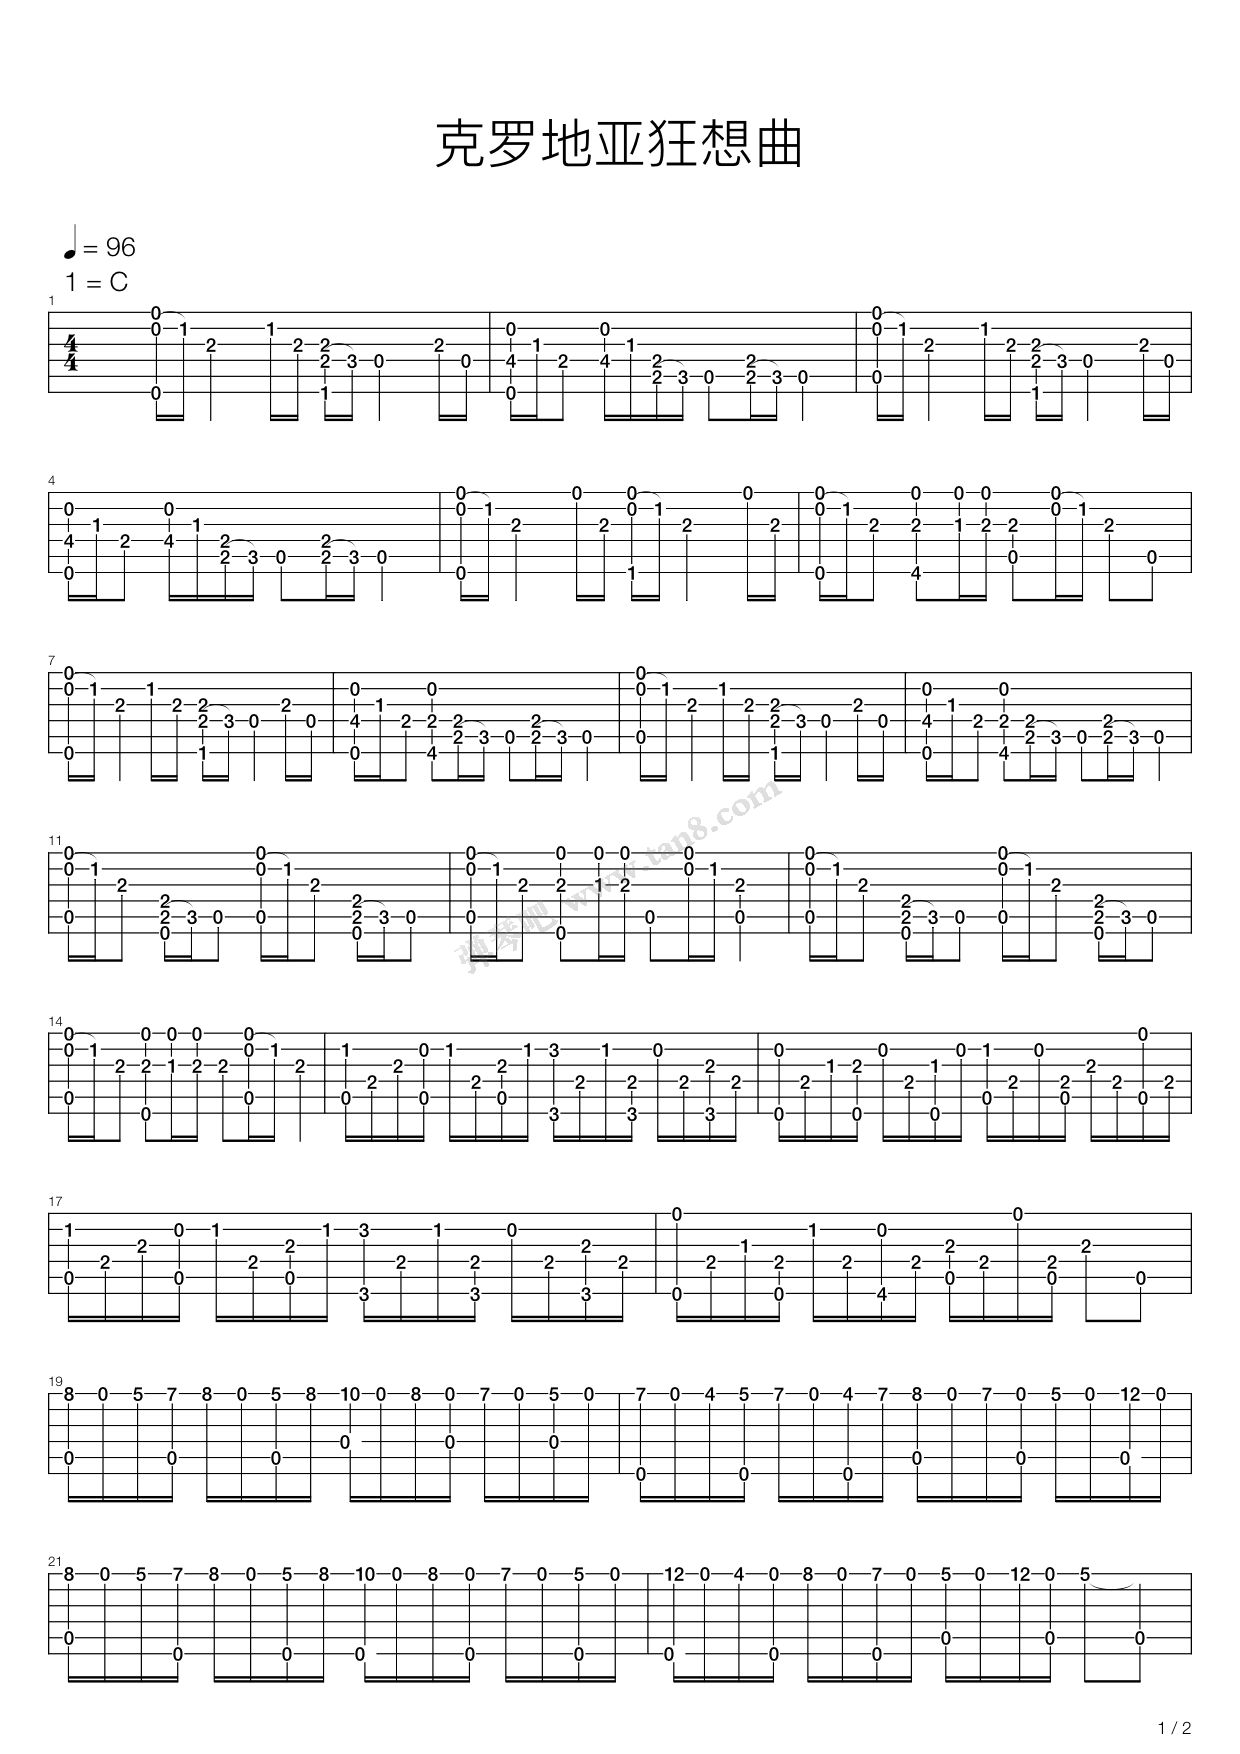 《克罗地亚狂想曲》指弹曲谱图片 - 吉他谱 选用C调指法编配 - 中级谱子 - 六线谱(独奏/指弹谱) - 易谱库